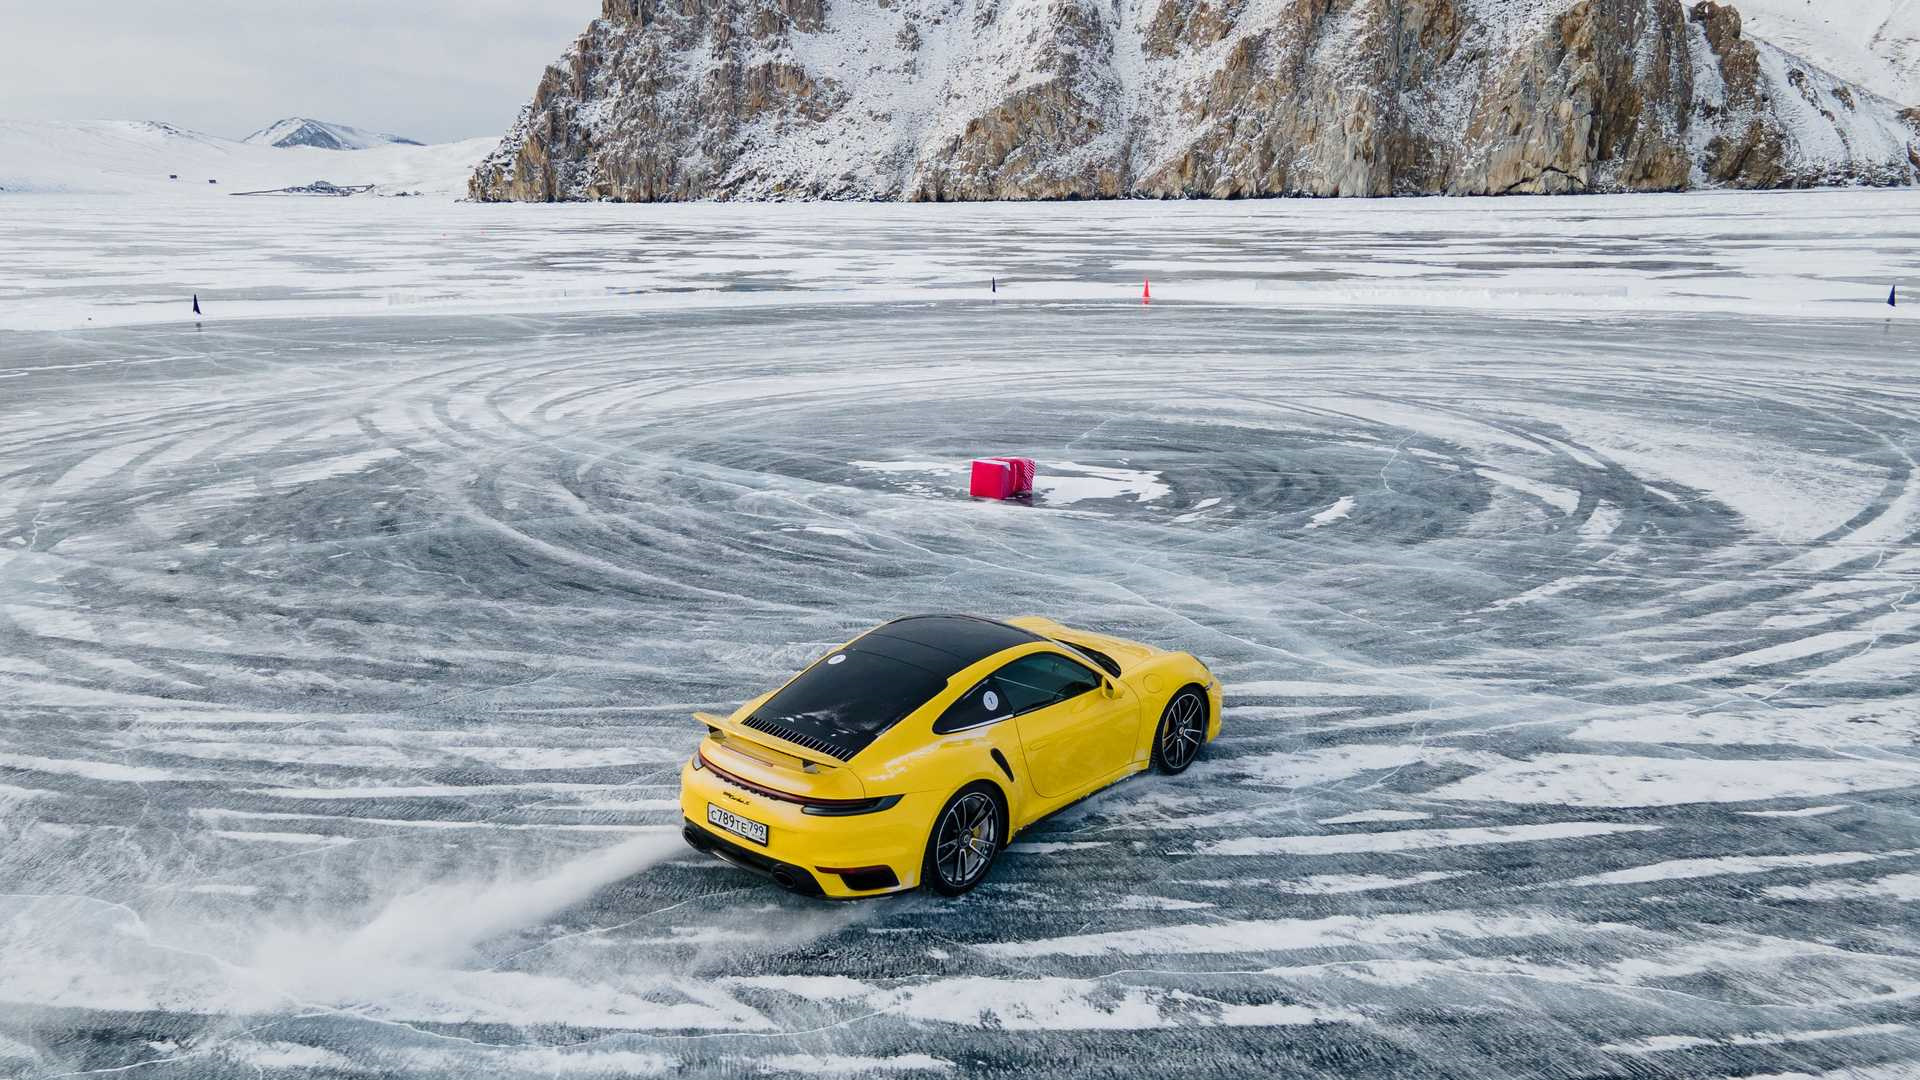 Можно на машине на лед